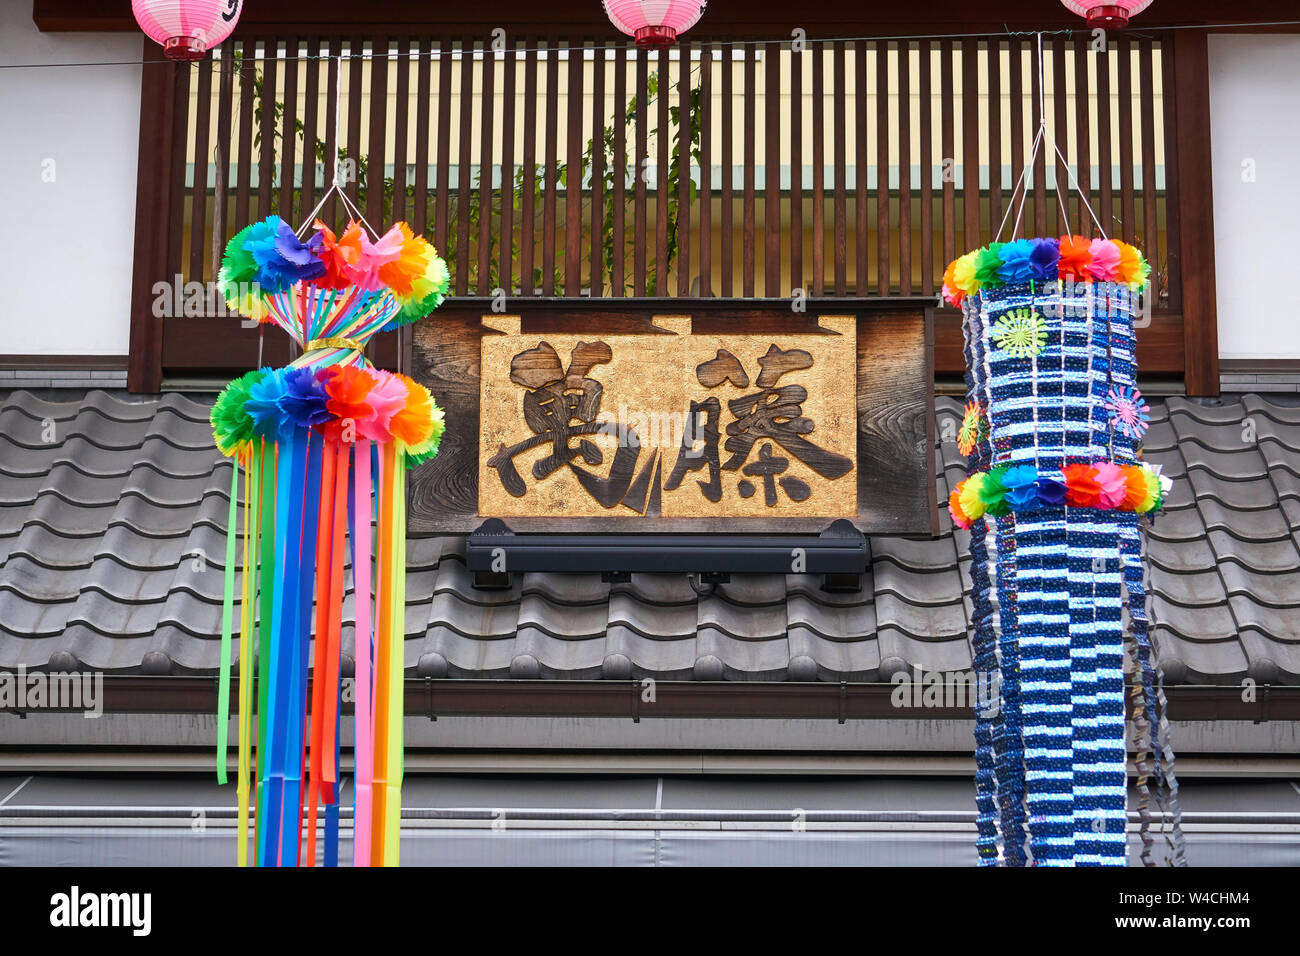 Le festive colorate (colorate) streamers si trovano davanti al tetto di piastrelle nere di un ristorante e firmano la celebrazione di Tanabata in Giappone. Foto Stock